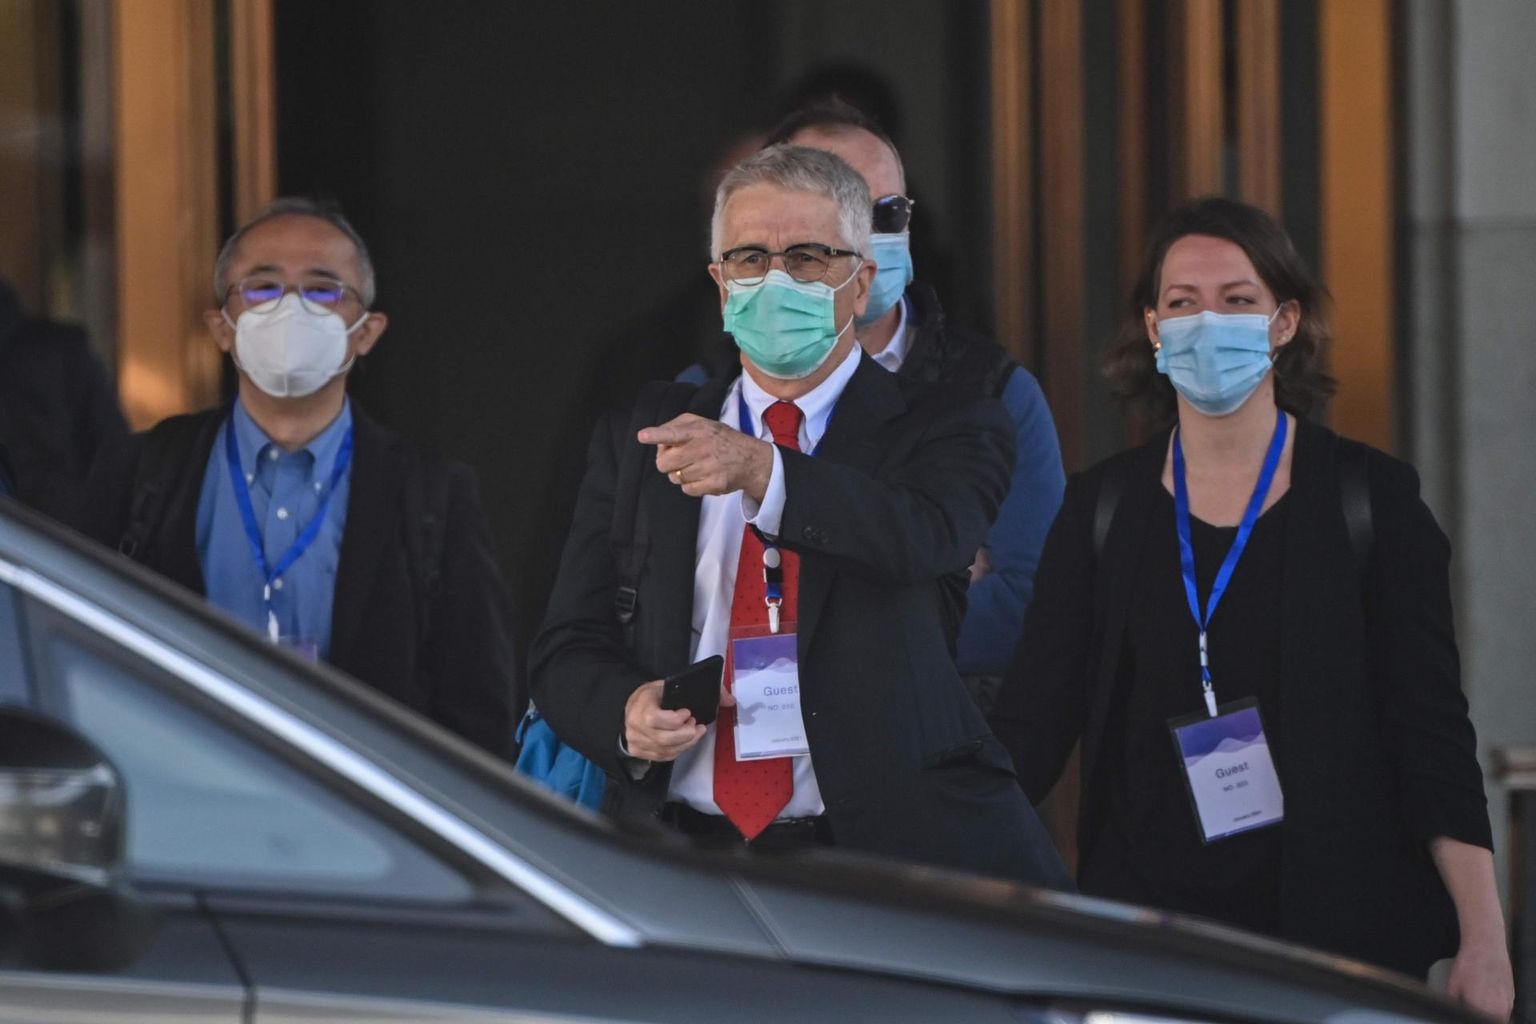 WHO uurimismeeskonna liikmed jaanuari lõpus Wuhanis. Pildil keskel Austraalia nakkushaiguste ekspert Dominic Dwyer.